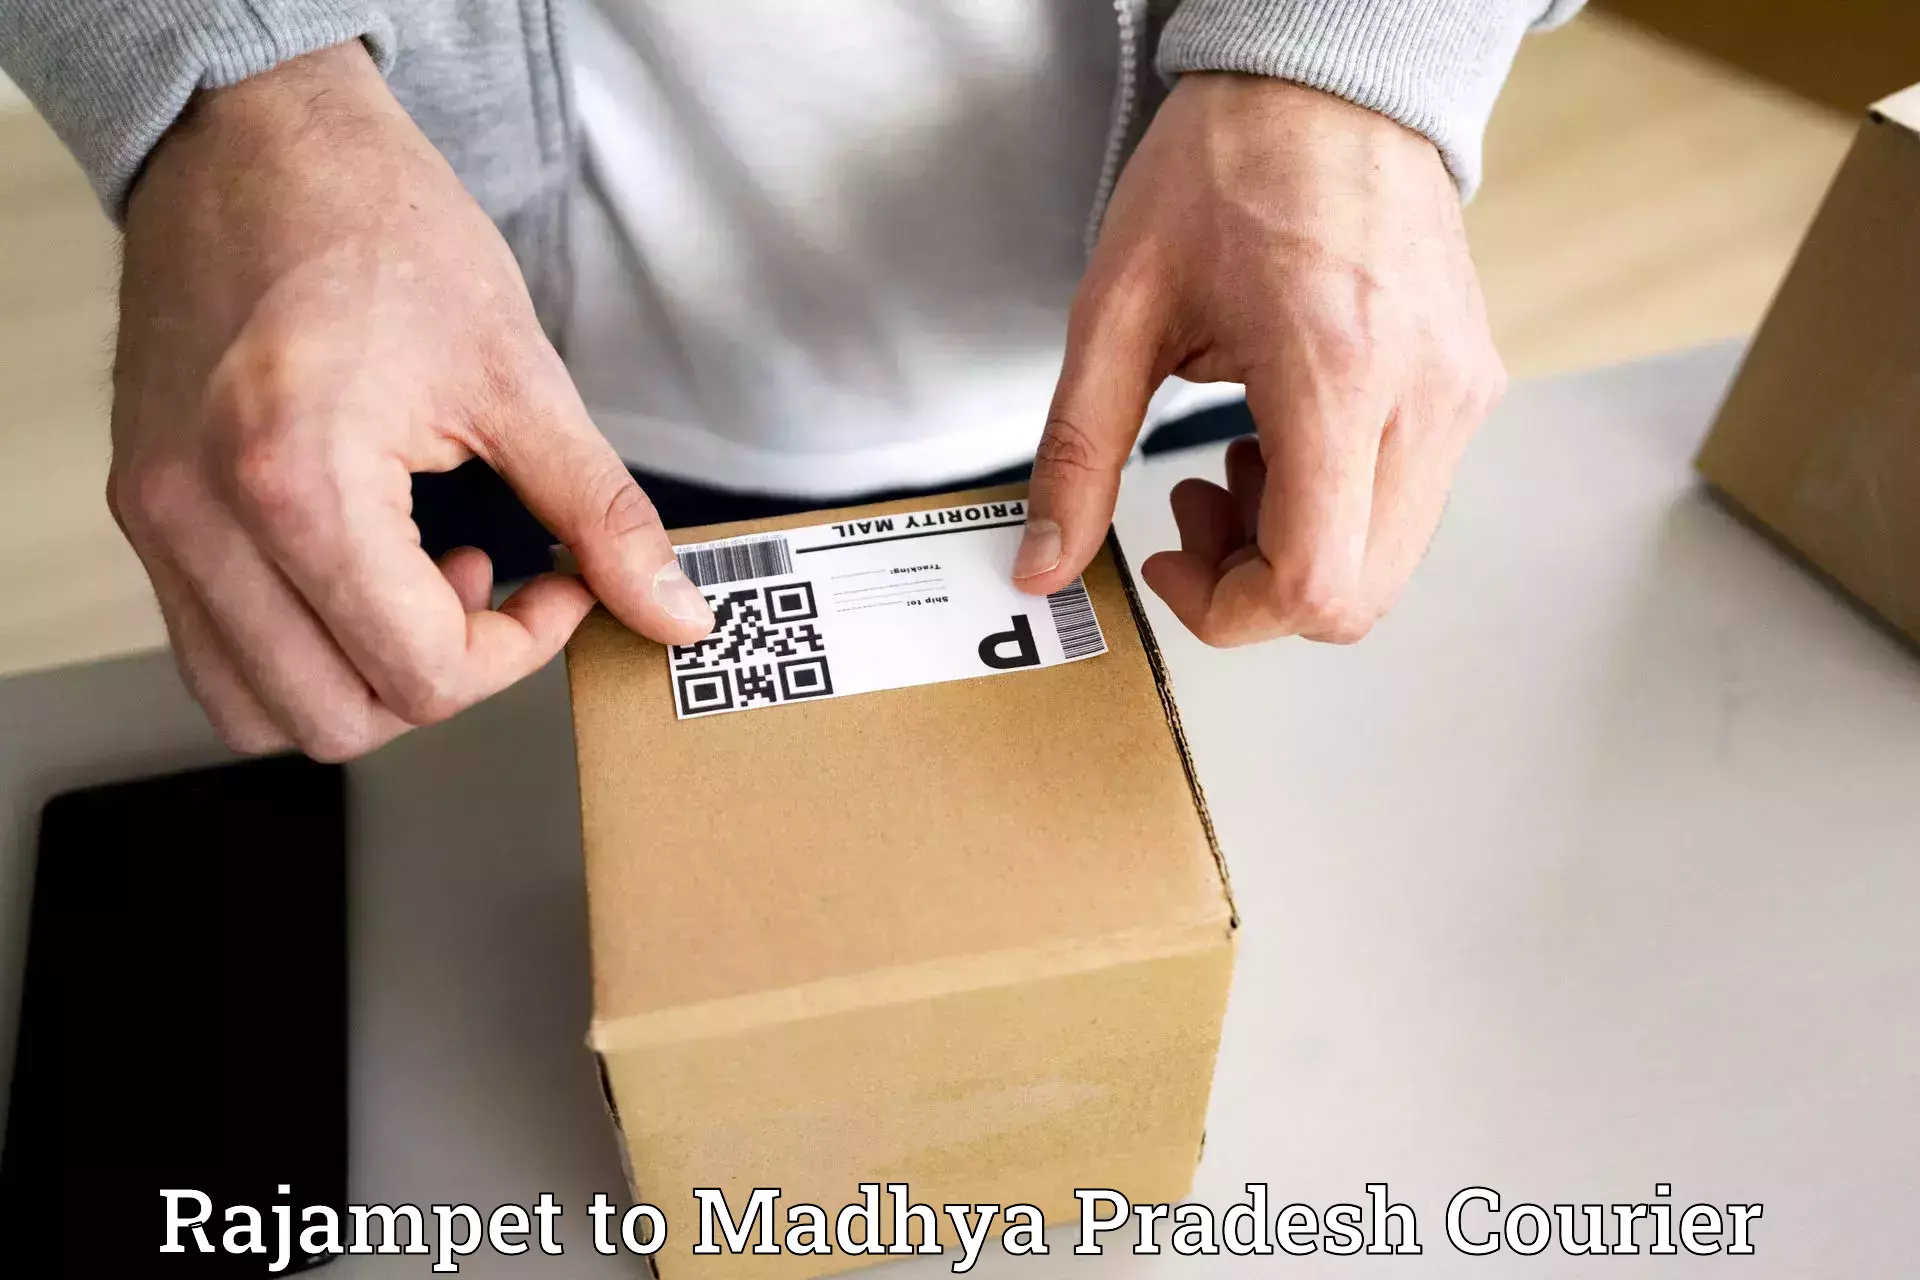 Affordable parcel service Rajampet to Sheopur